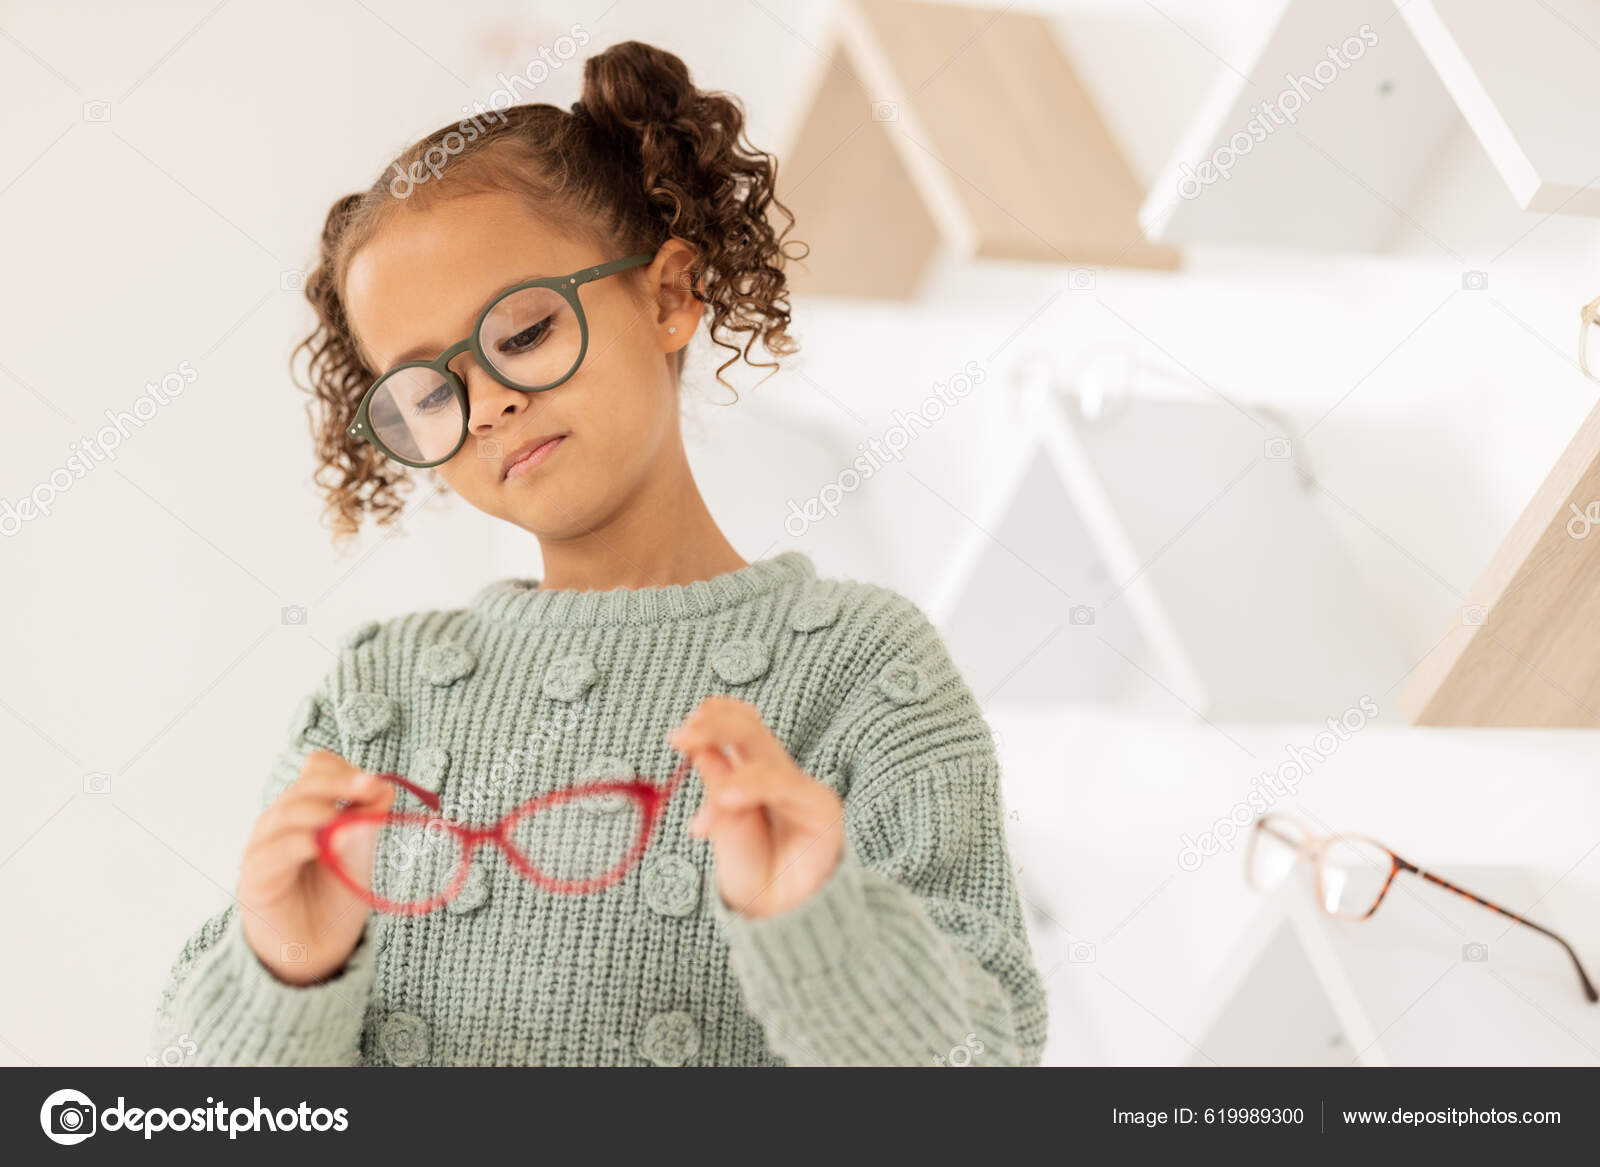 Briller Muligheder Børn Med Pige Optometri Butik Mens Shopping  Receptpligtige — Stock-foto © PeopleImages.com #619989300